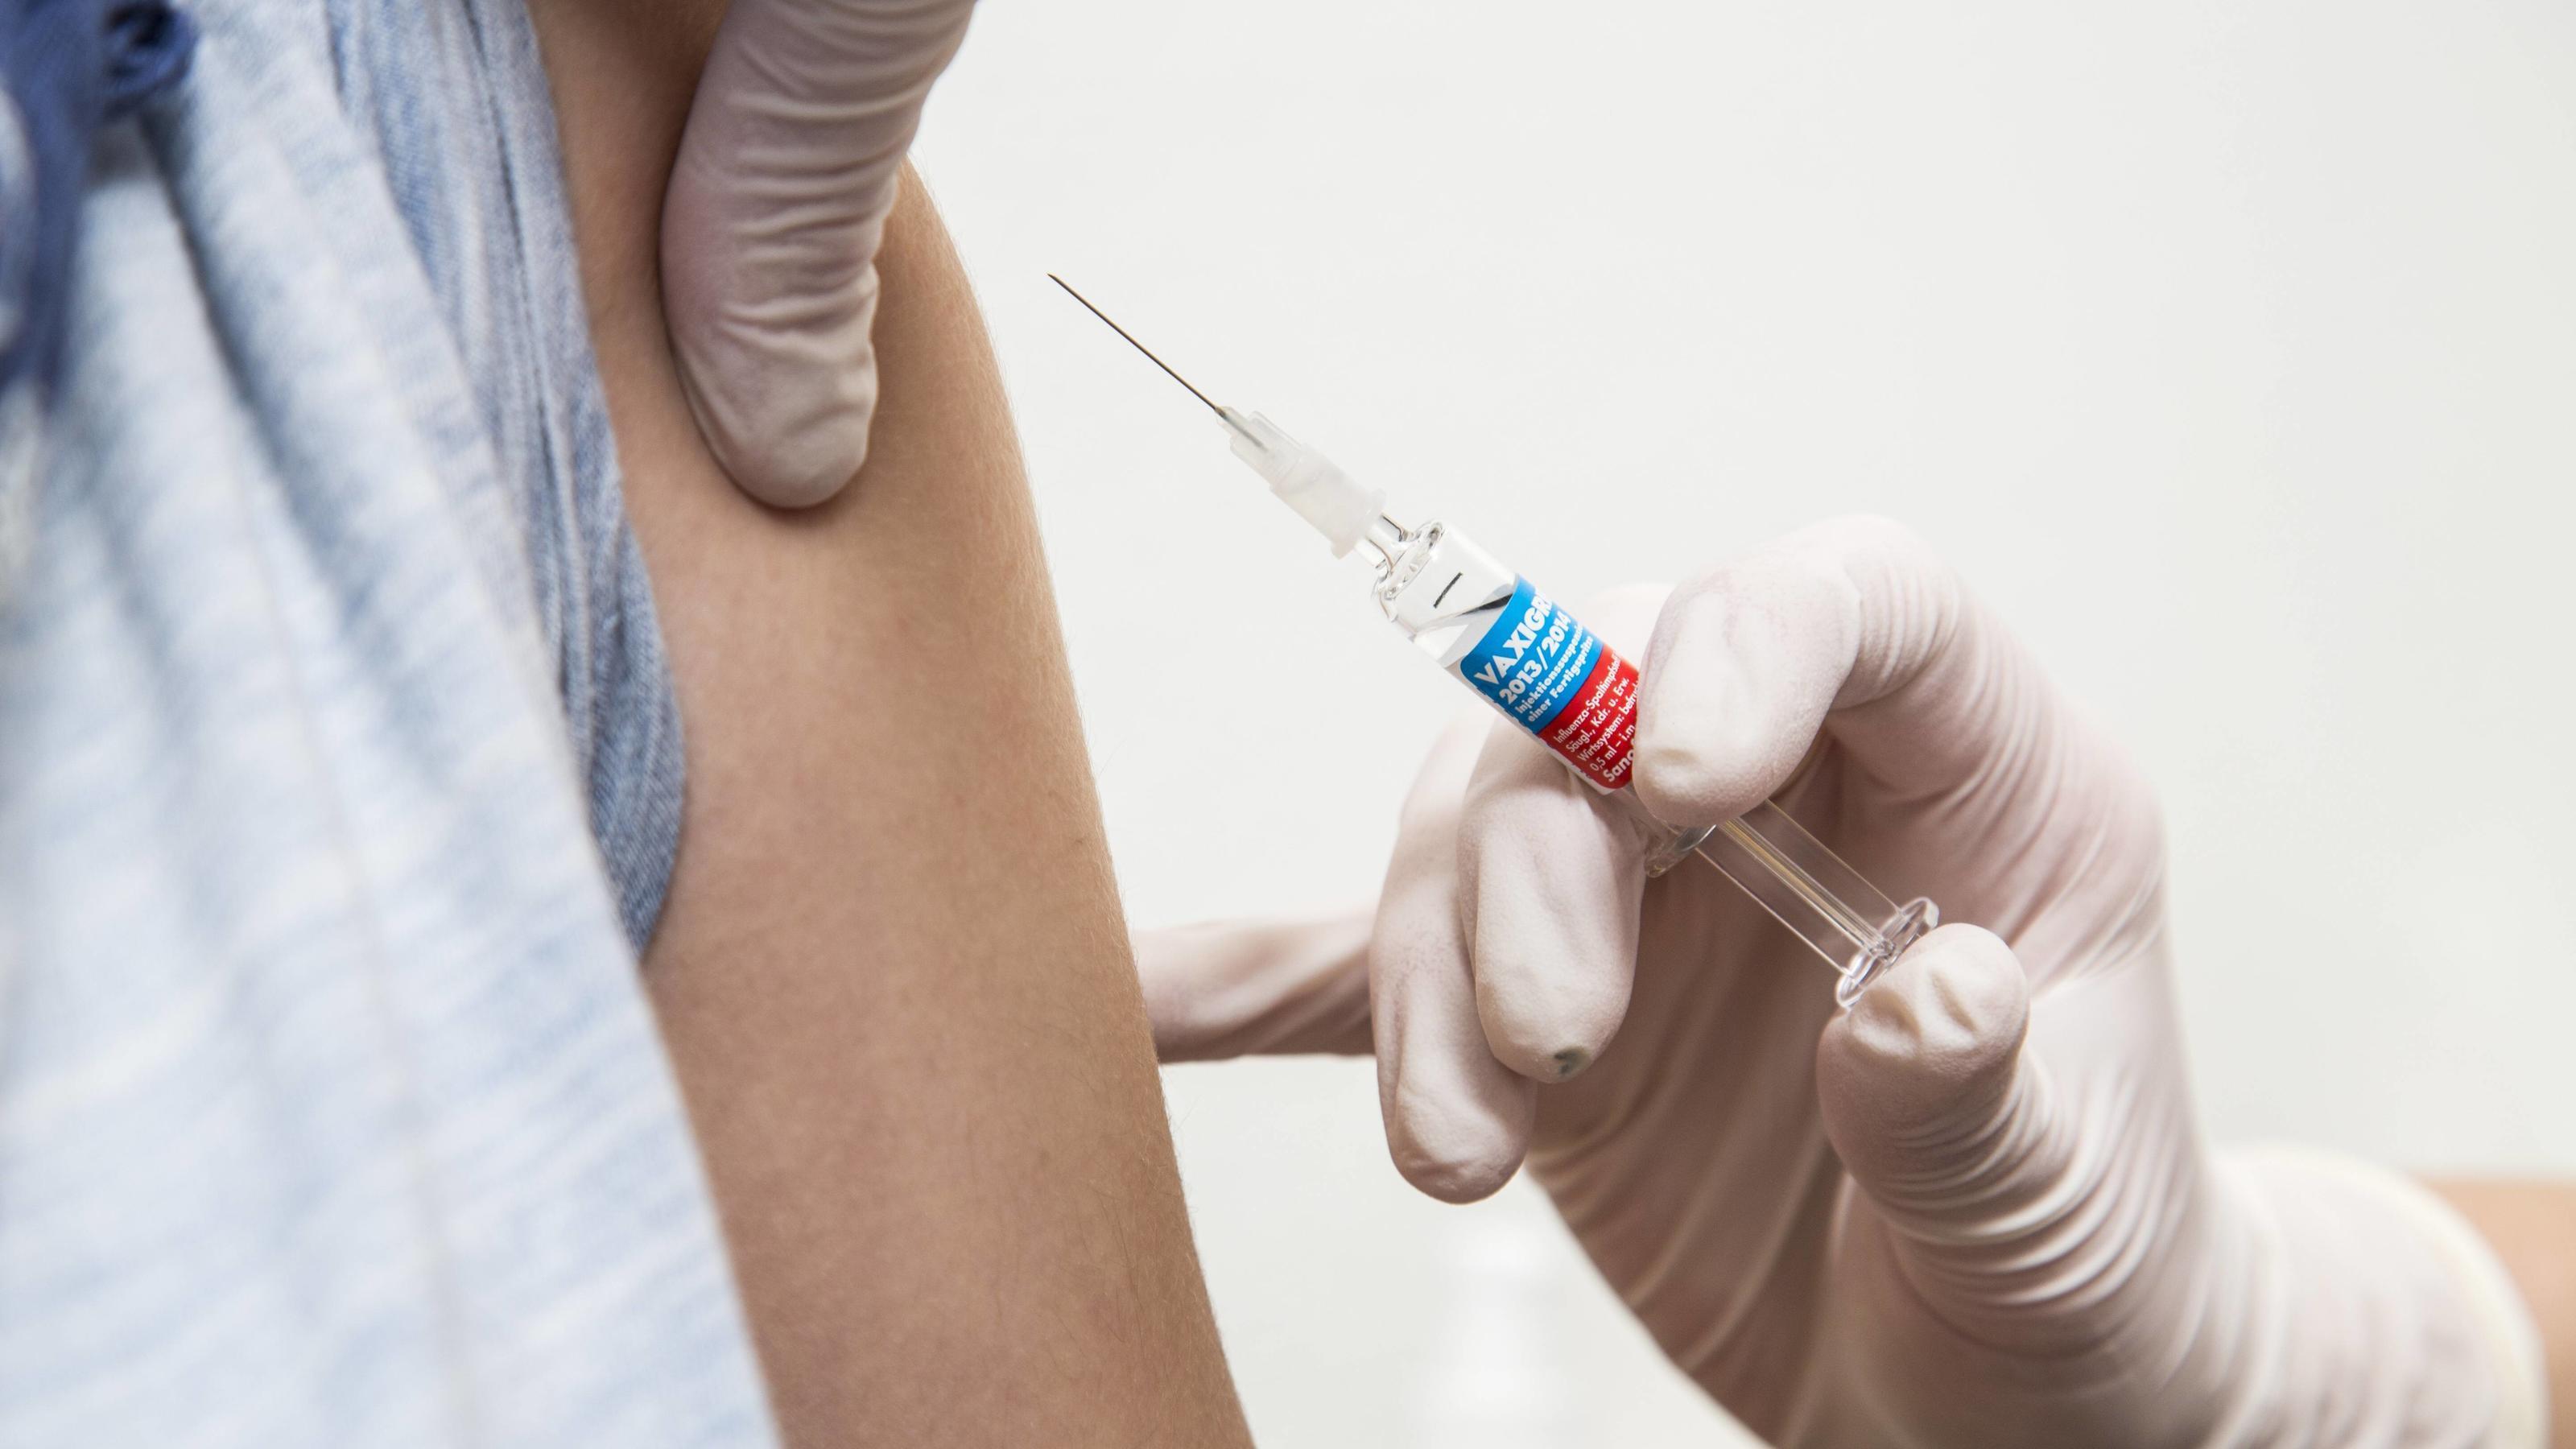 Вакцина от гриппа может защитить от тяжелых осложнений COVID-19